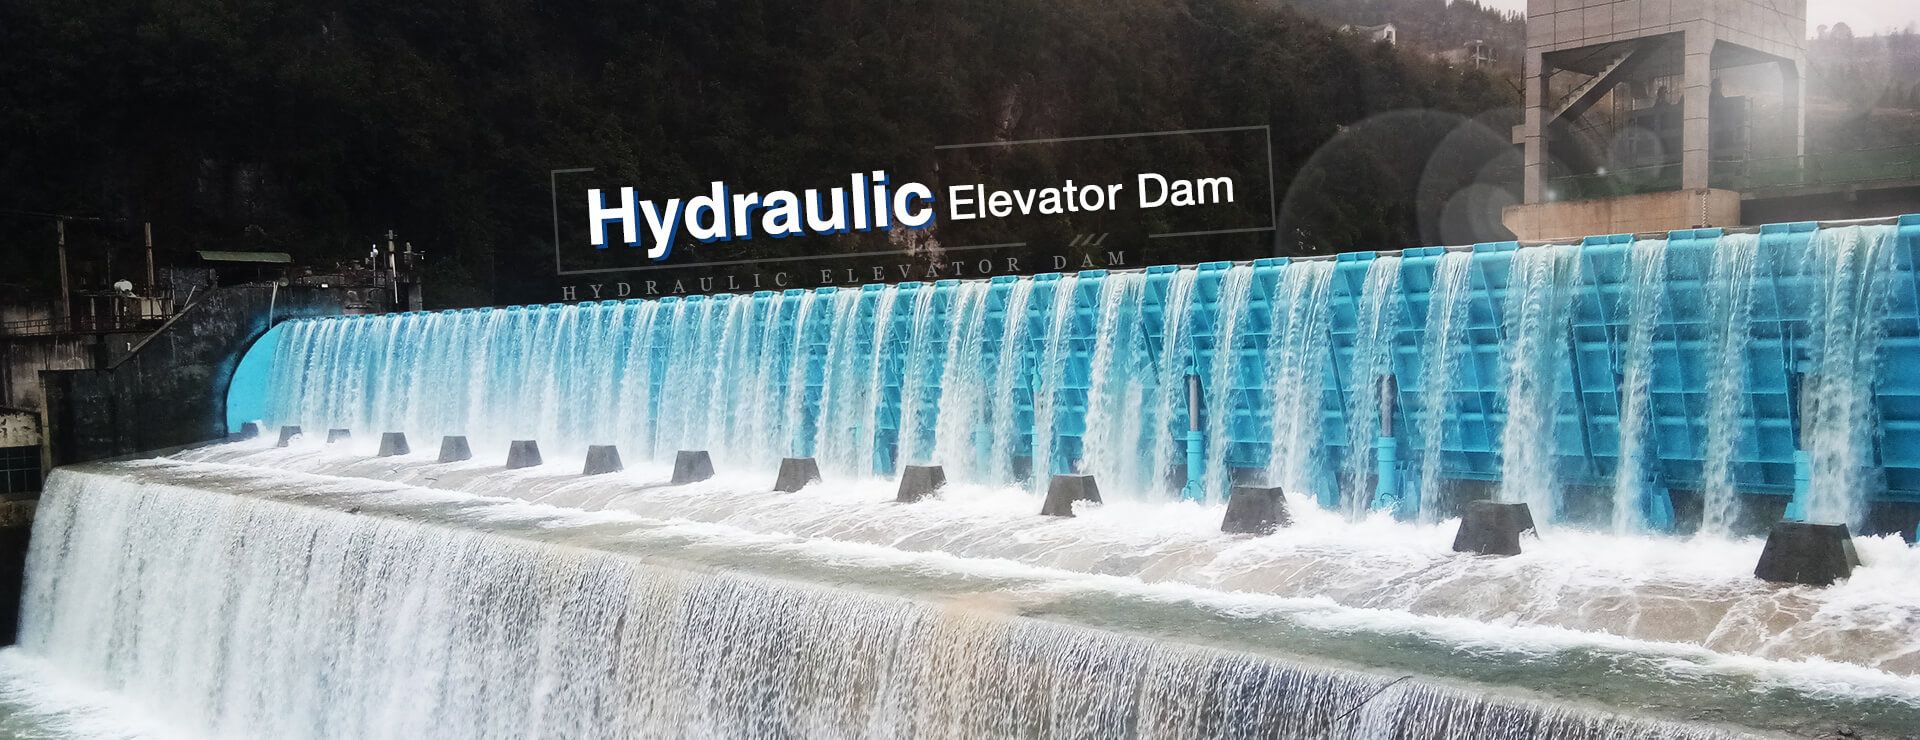 Hydraulic Elevator Dam